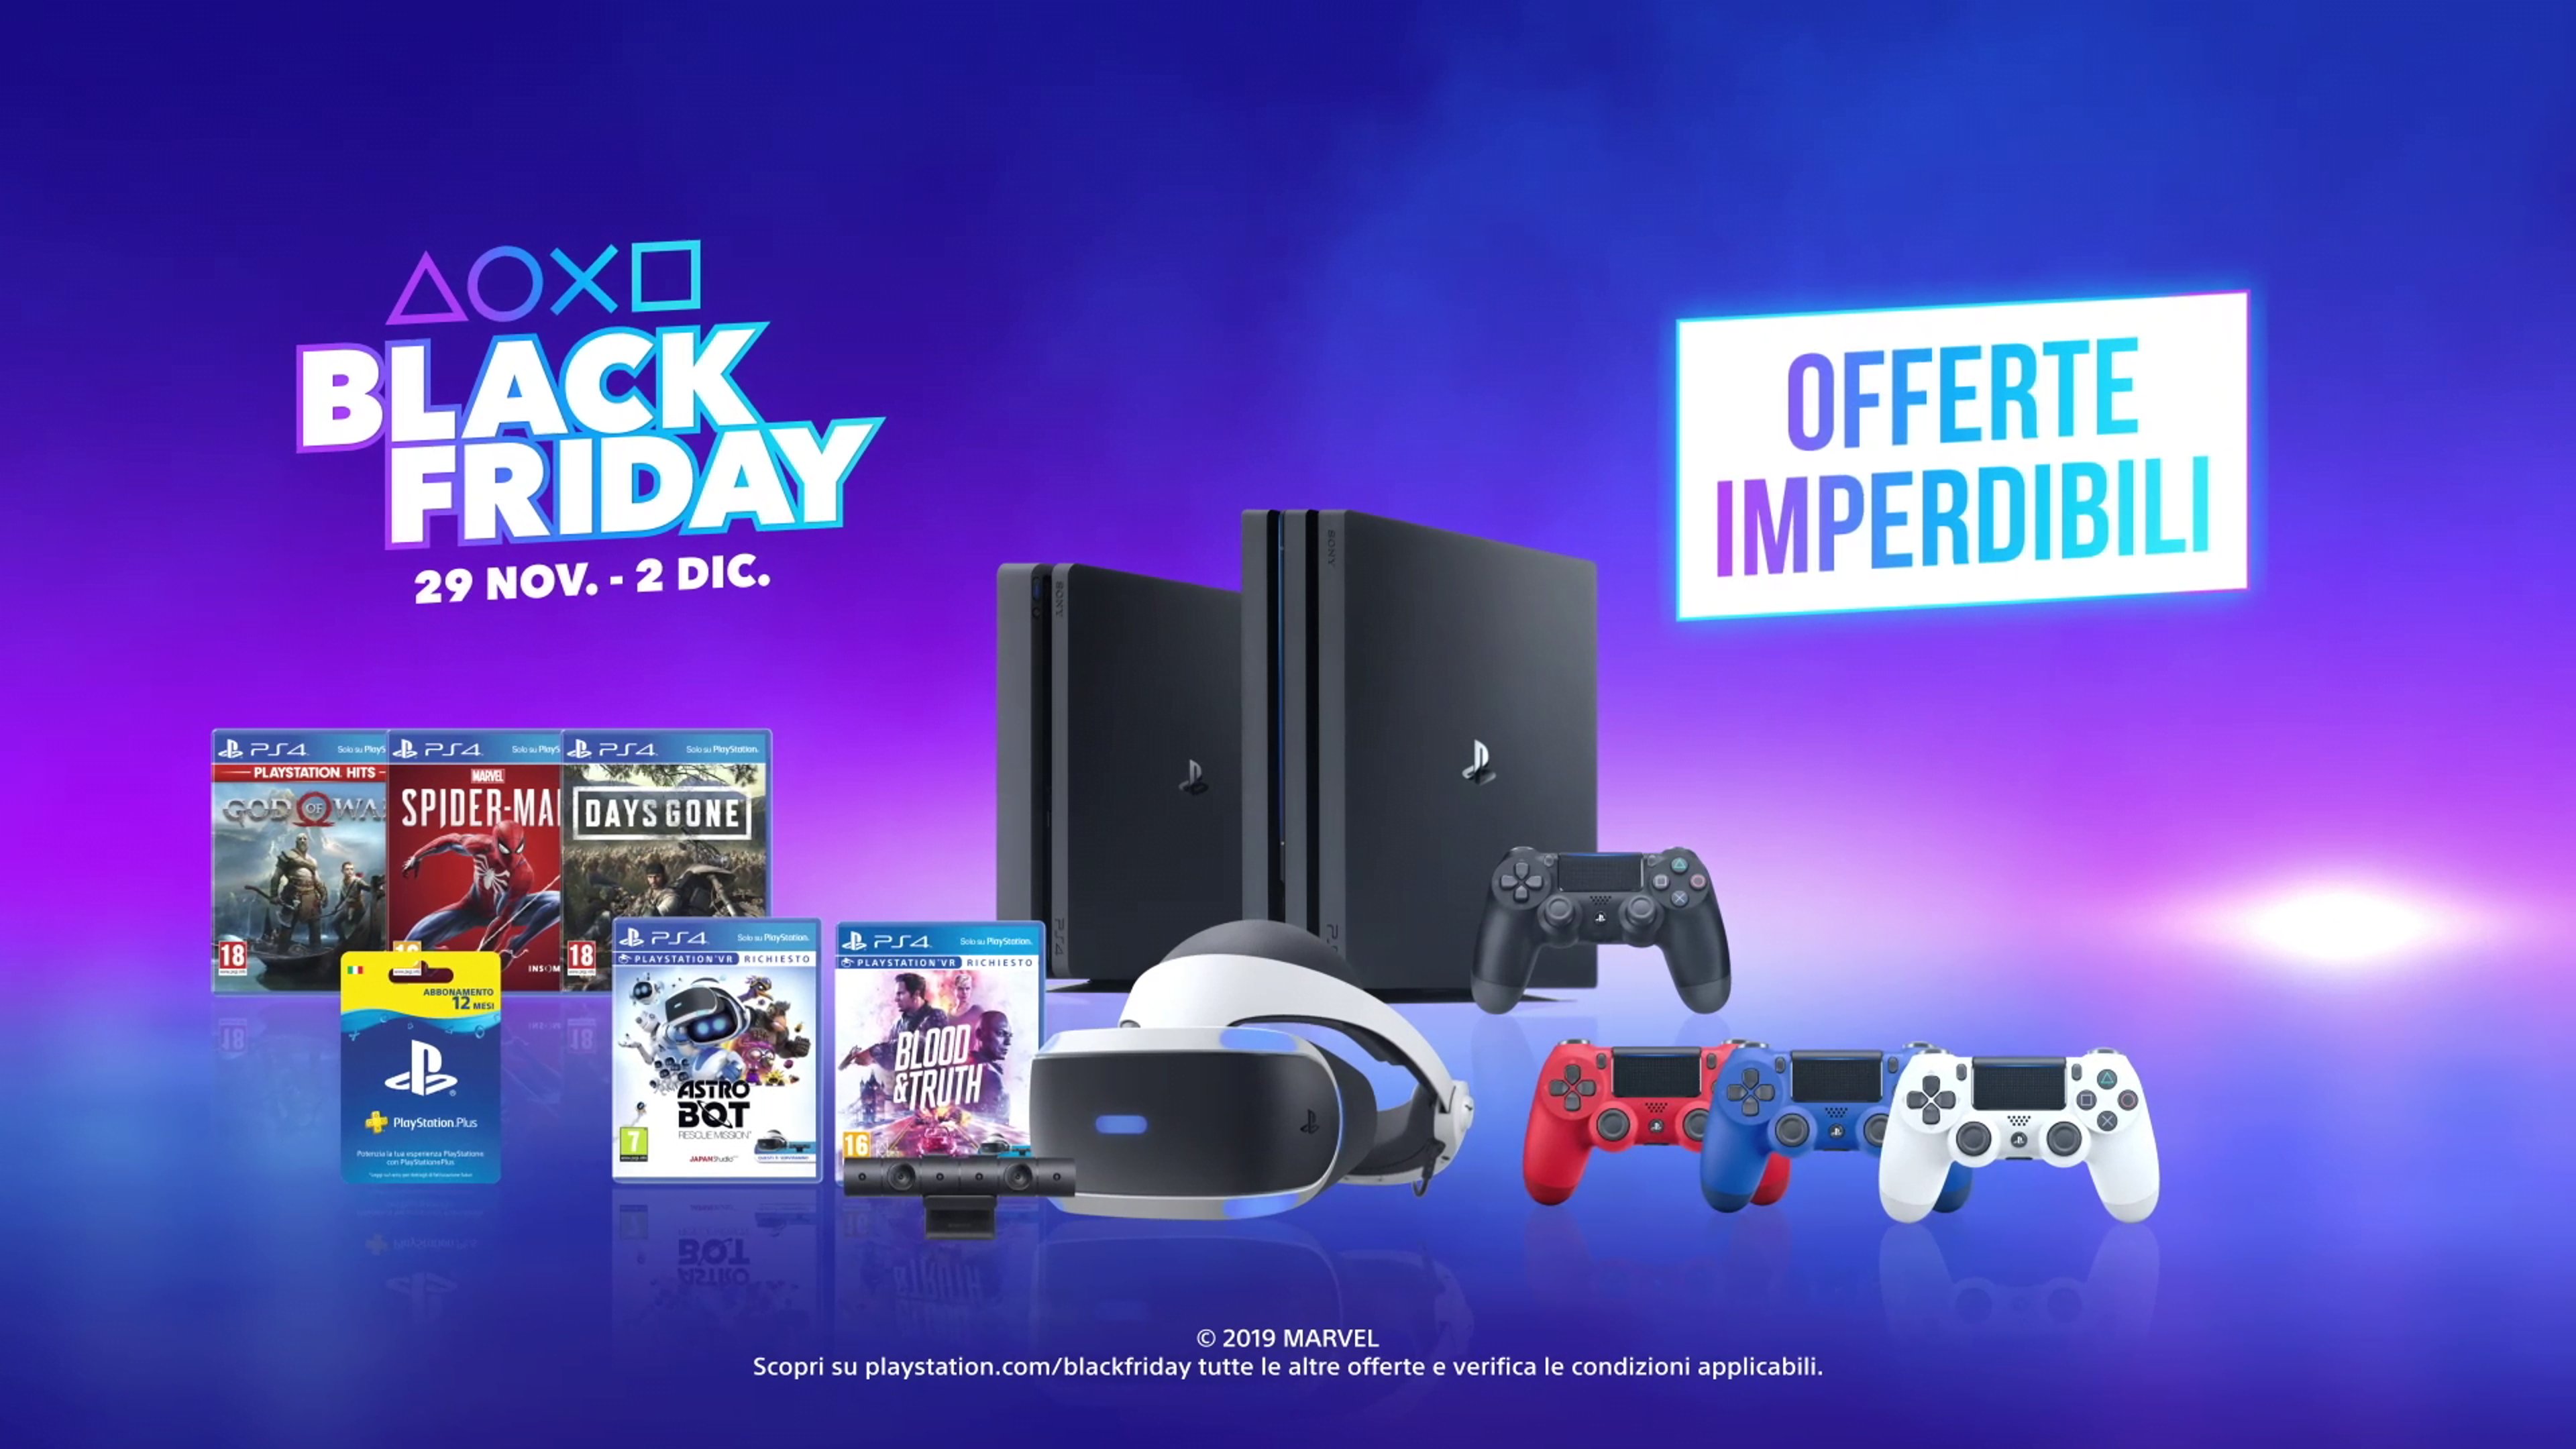 Tante promozioni targate PlayStation, in occasione del Black Friday e del Cyber Monday